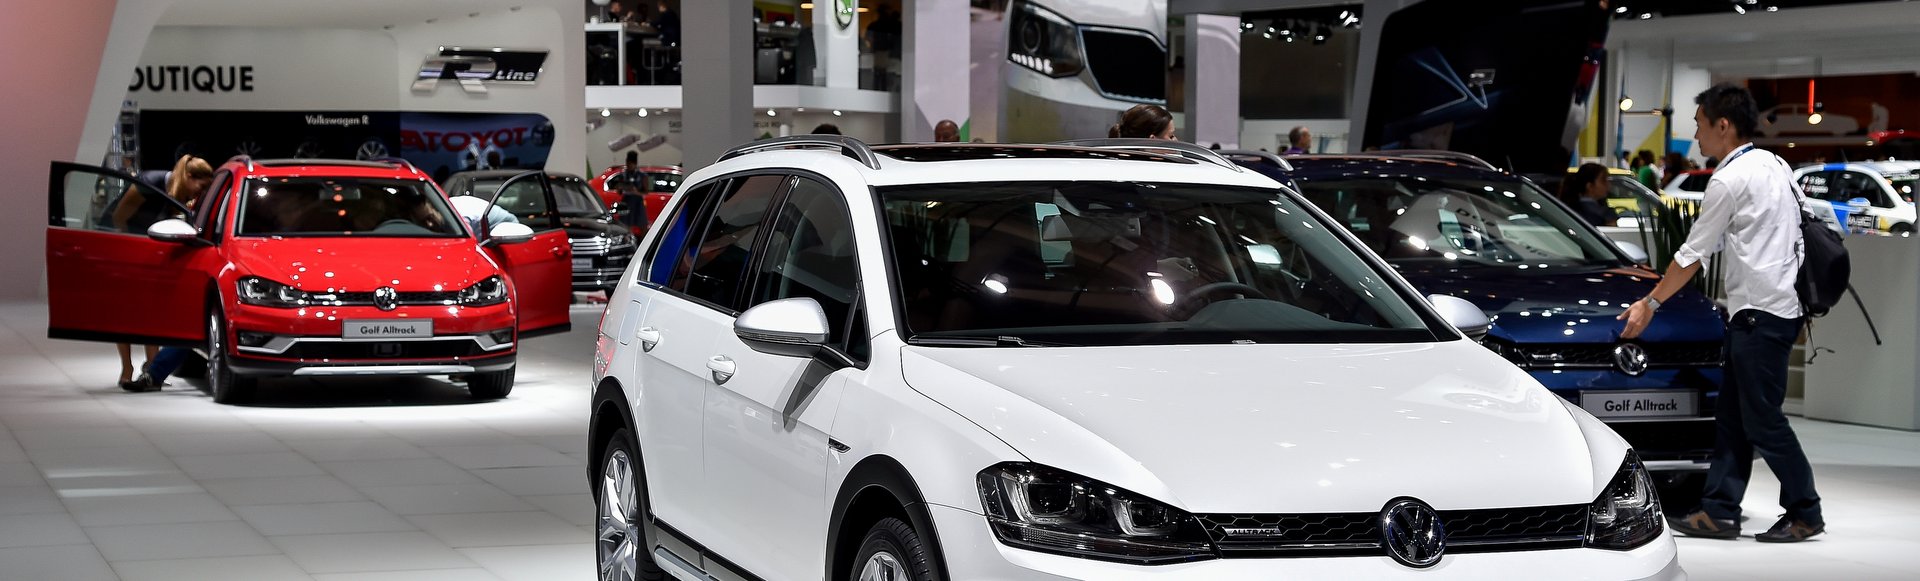 Közlekedésre alkalmatlan autókat adott el a VW 4